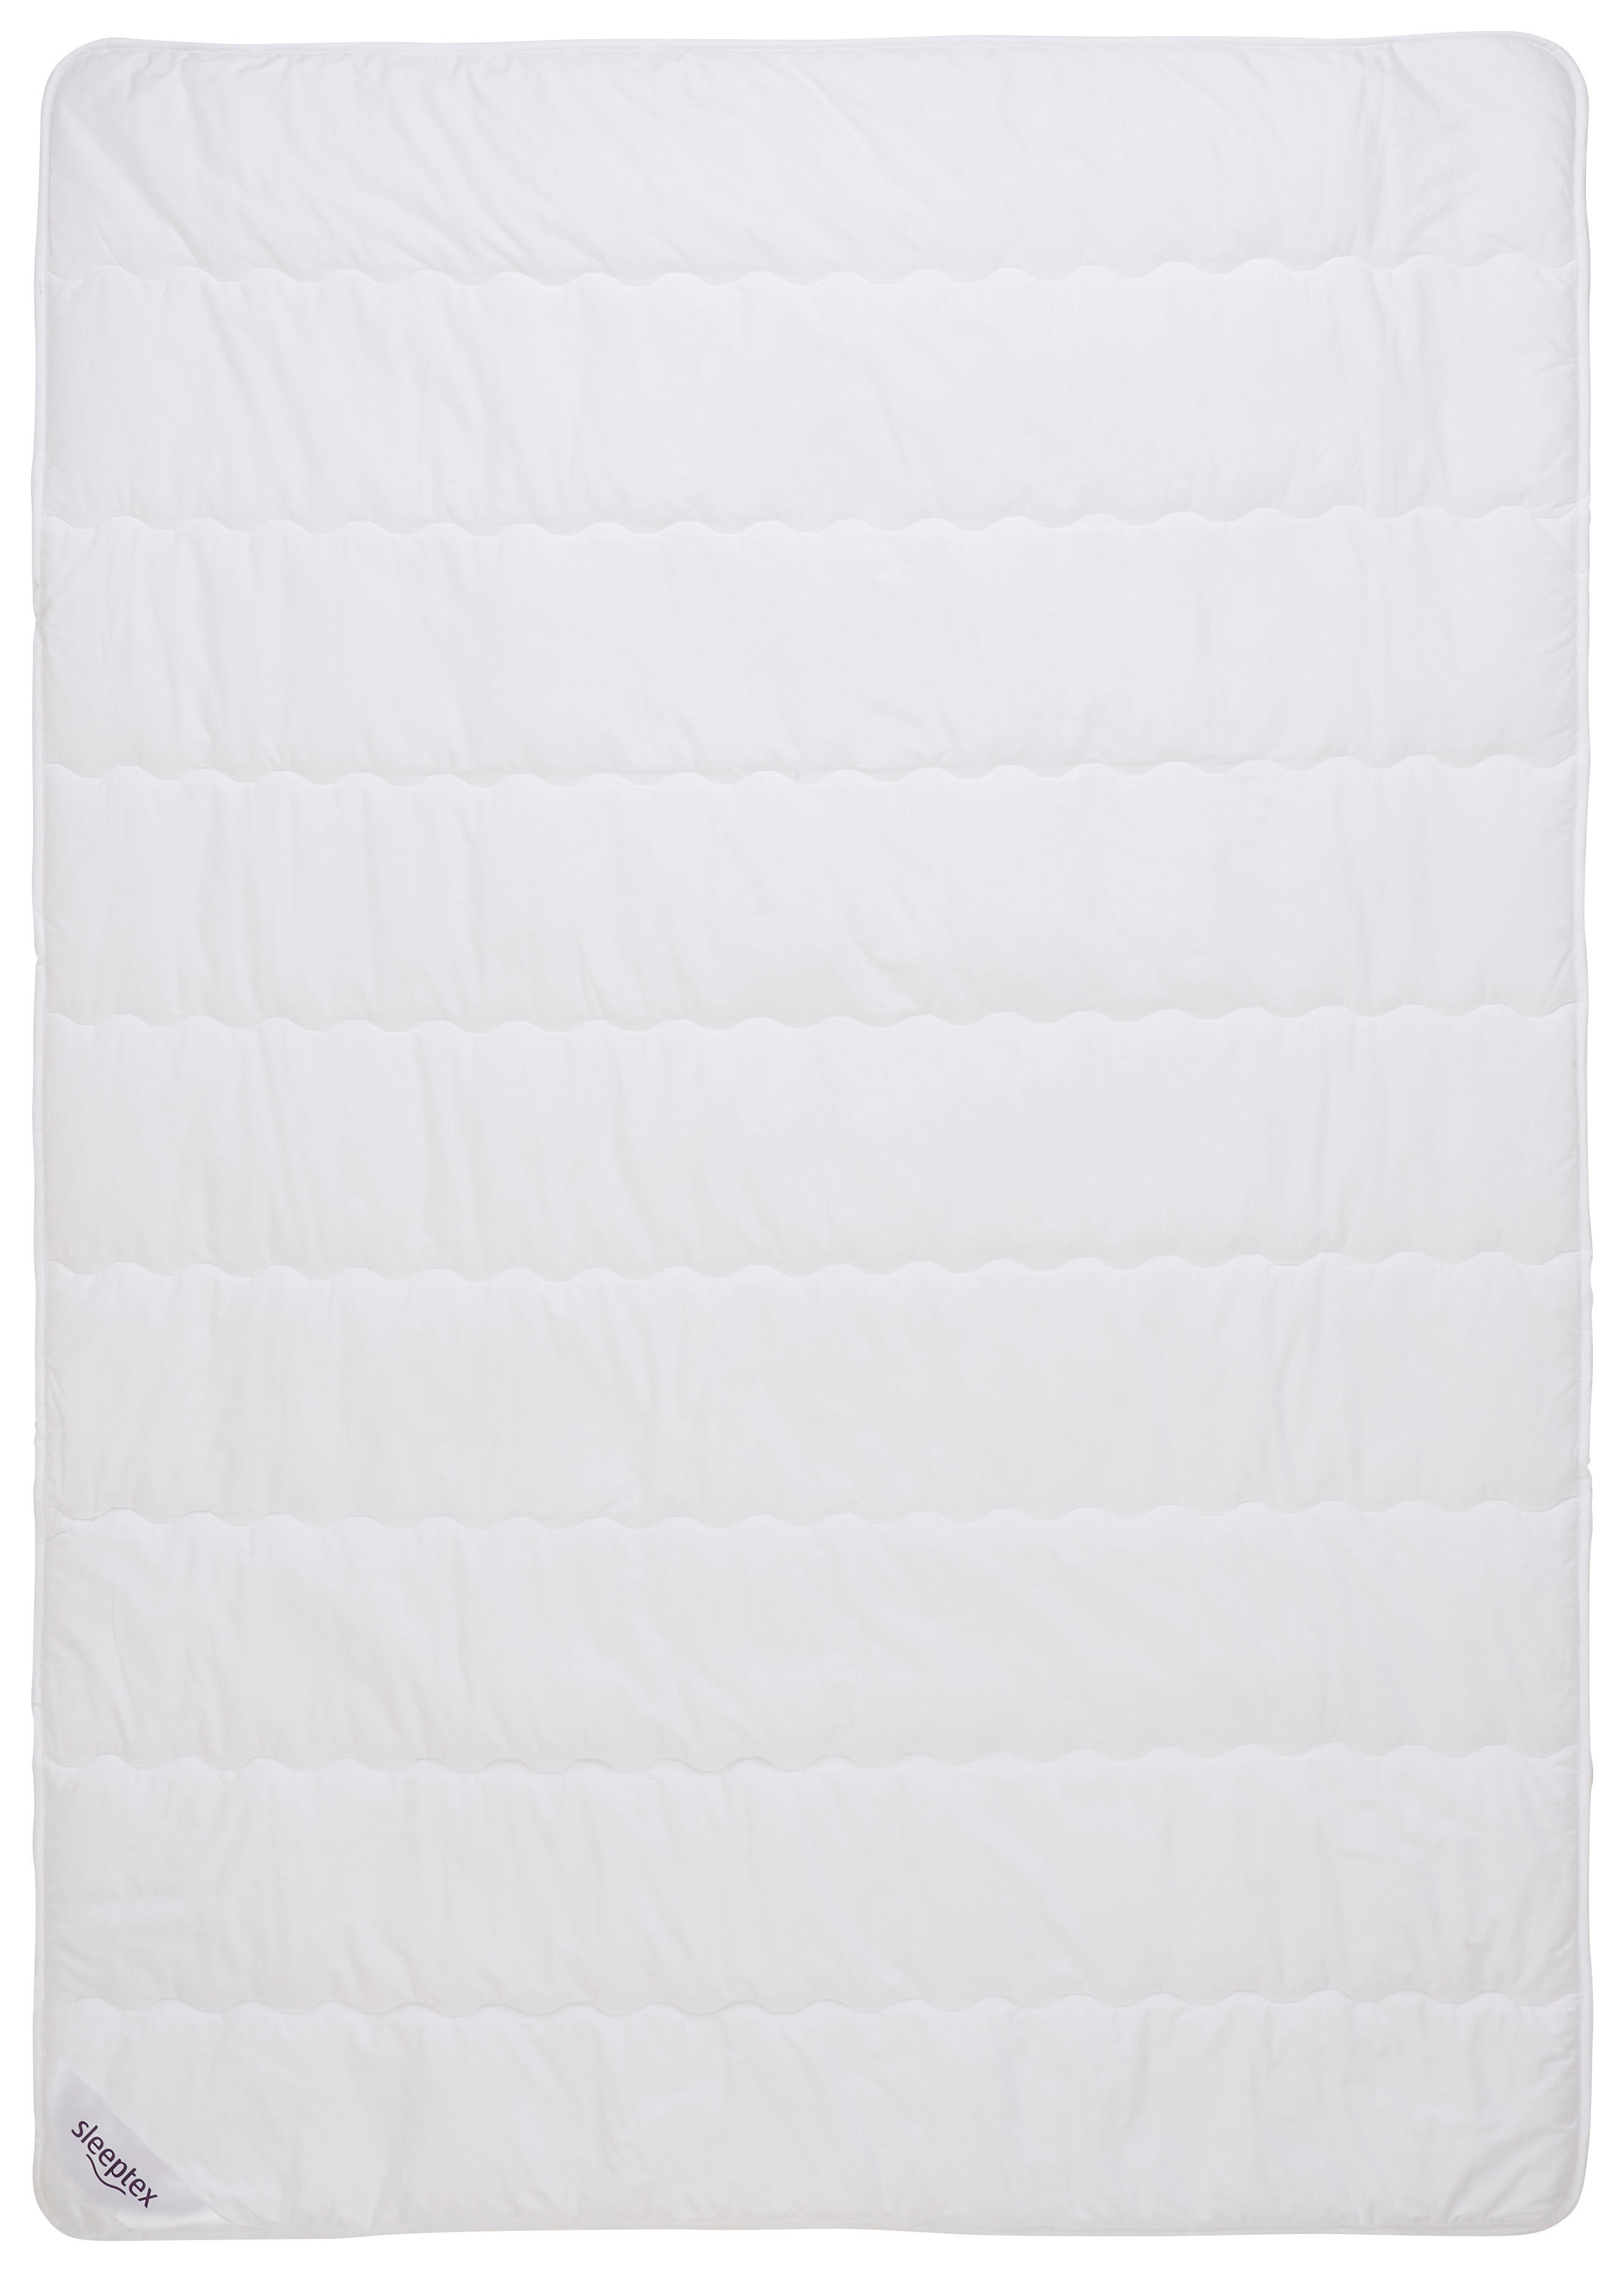 LETNÍ PŘIKRÝVKA, 140/220 cm, polyester, rouno, duté vlákno - bílá, Basics, textil (140/220cm) - Sleeptex